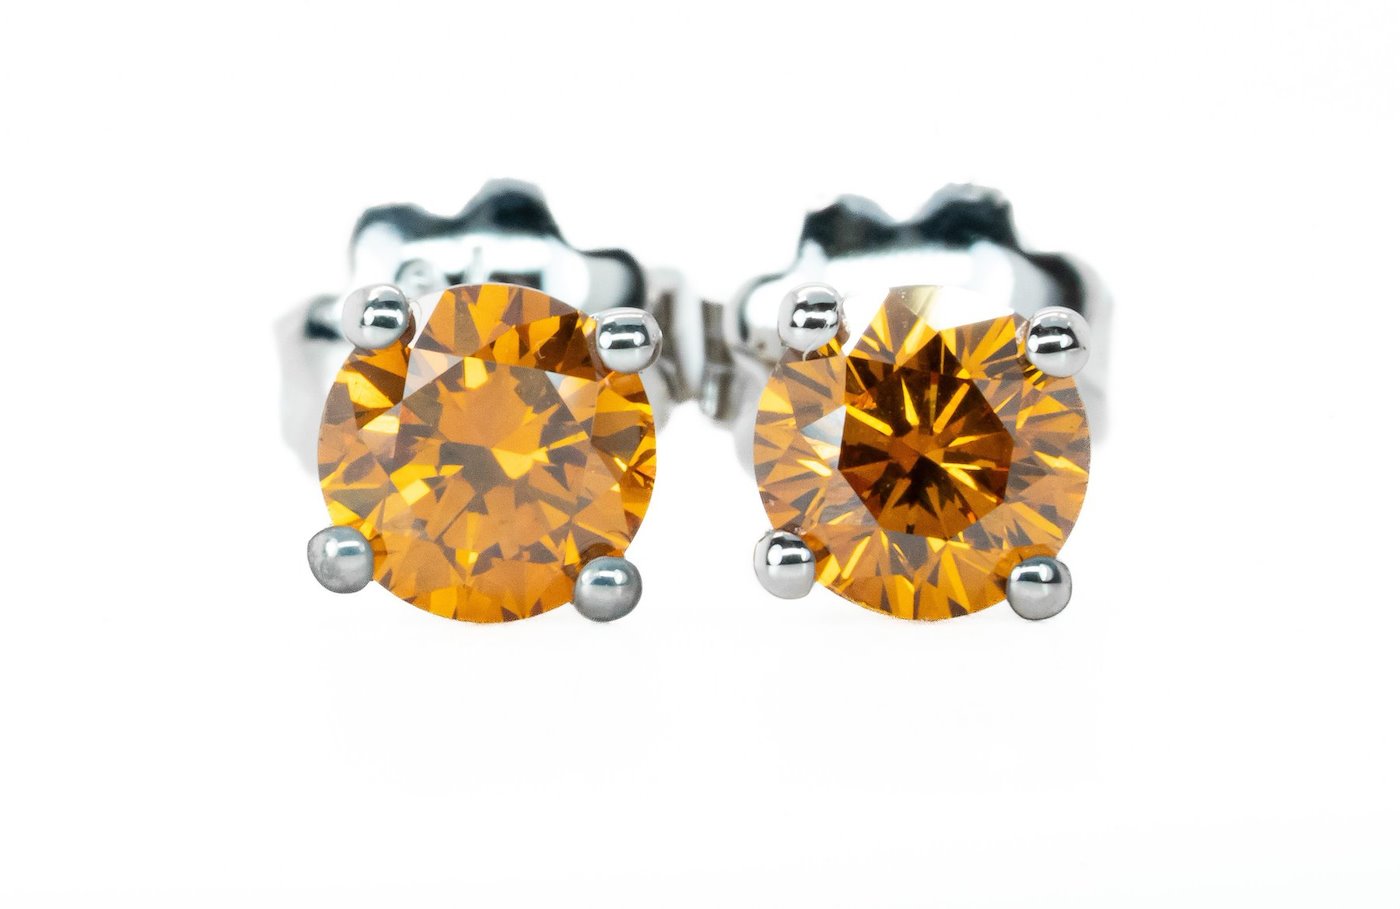 .. - Luxusní náušnice s 1,17 ct Natural Fancy Vivid Orange diamanty, zlato 750/1000, značeno platnou puncovní značkou "kohout", hrubá hmotnost 1,87 g 